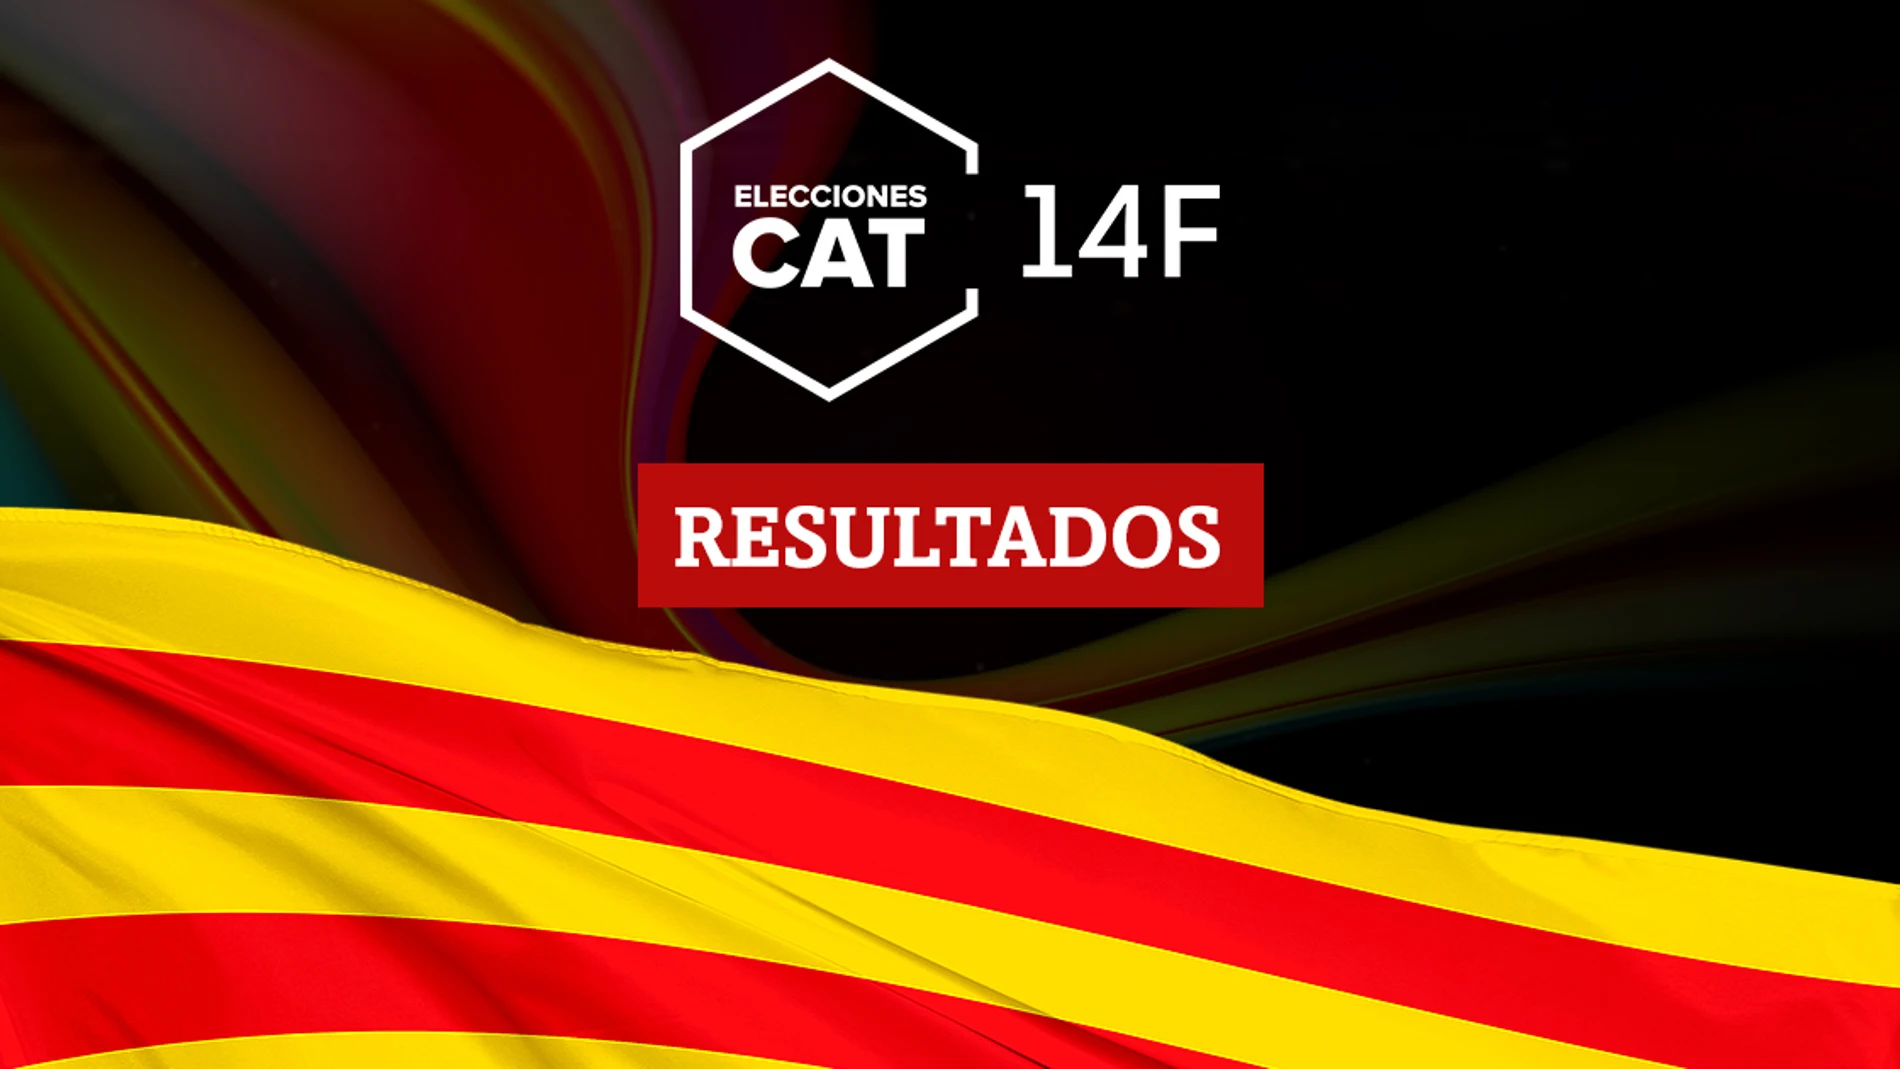 Resultados en La Selva de Mar de las elecciones catalanas del 14F 2021